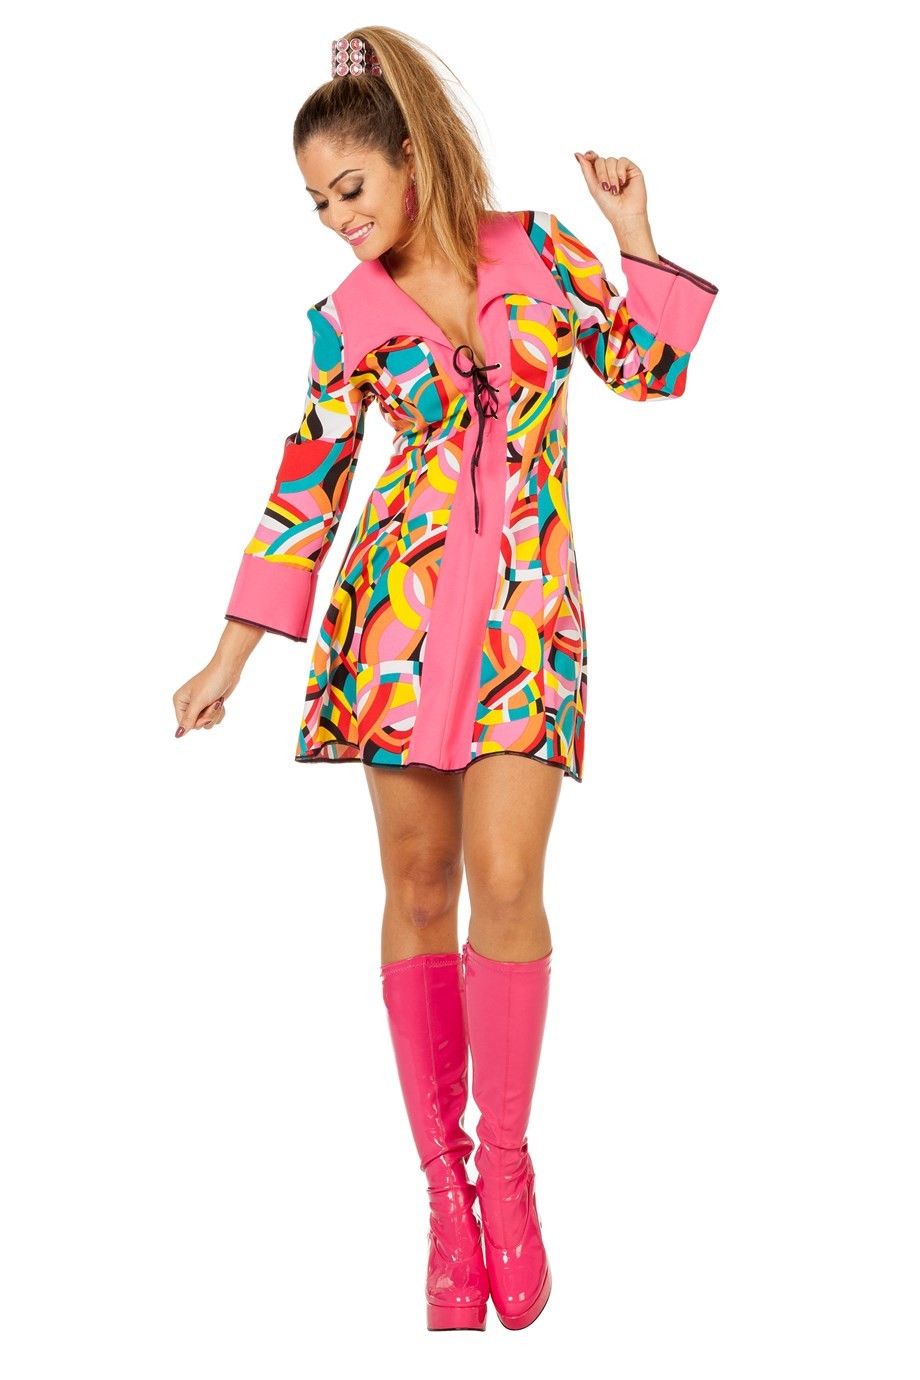 Déguisement robe colorée Disco femme - Happy Fiesta Lyon